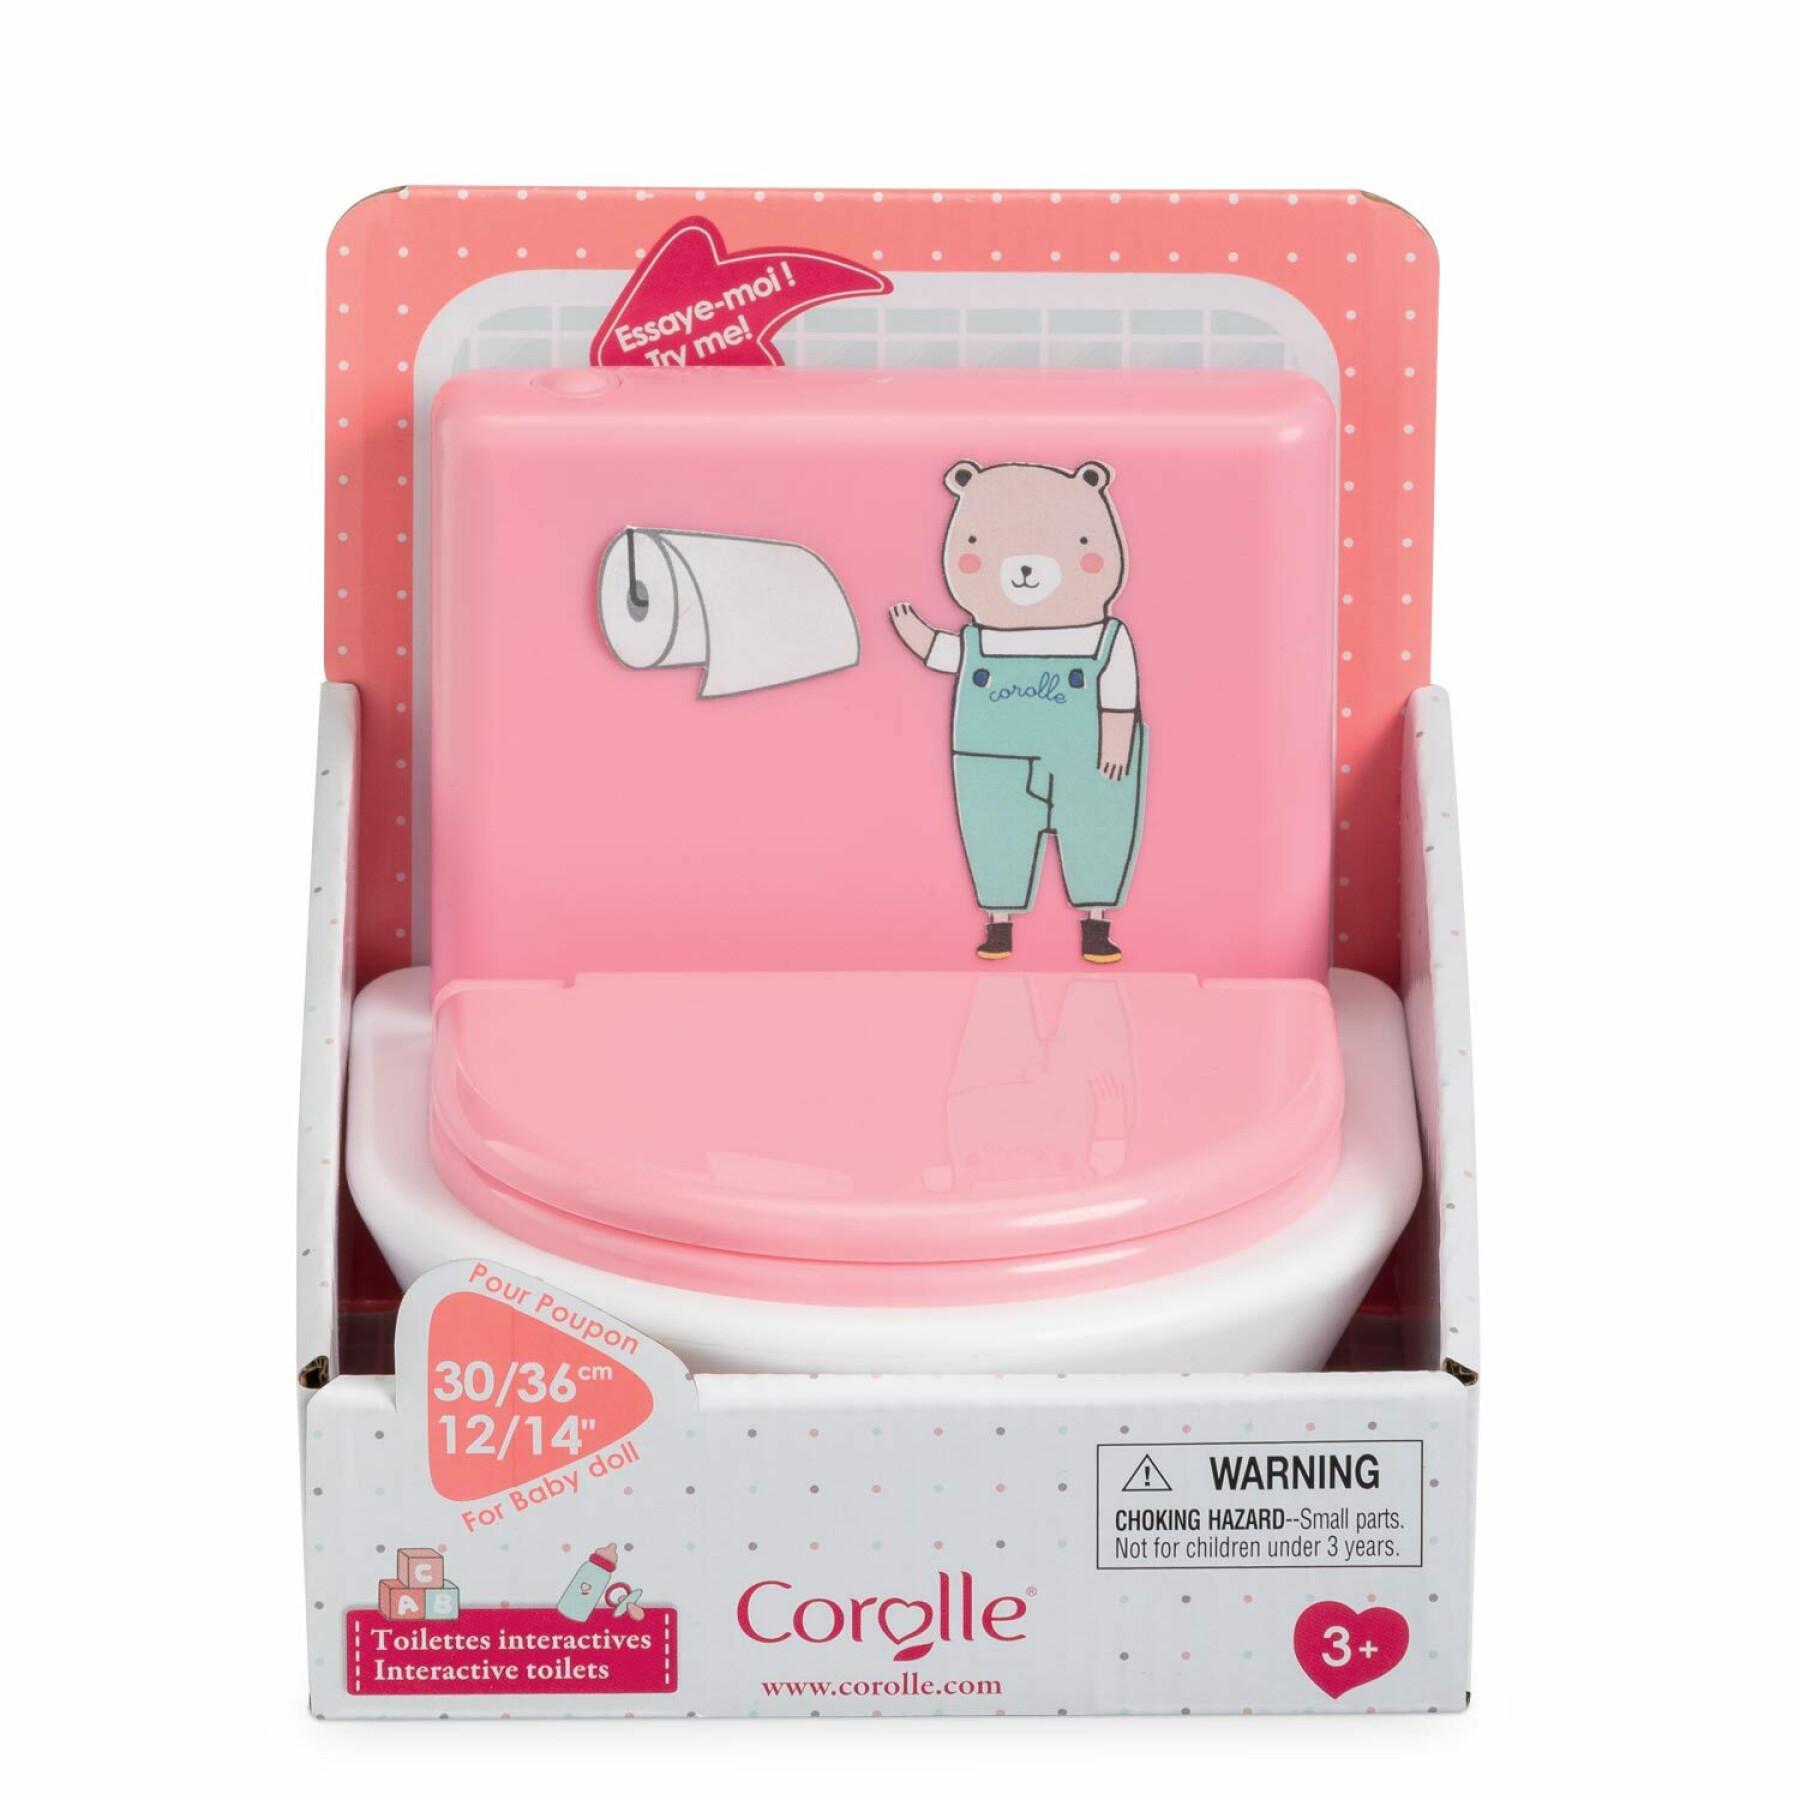 Interaktiv toalett för barn Corolle